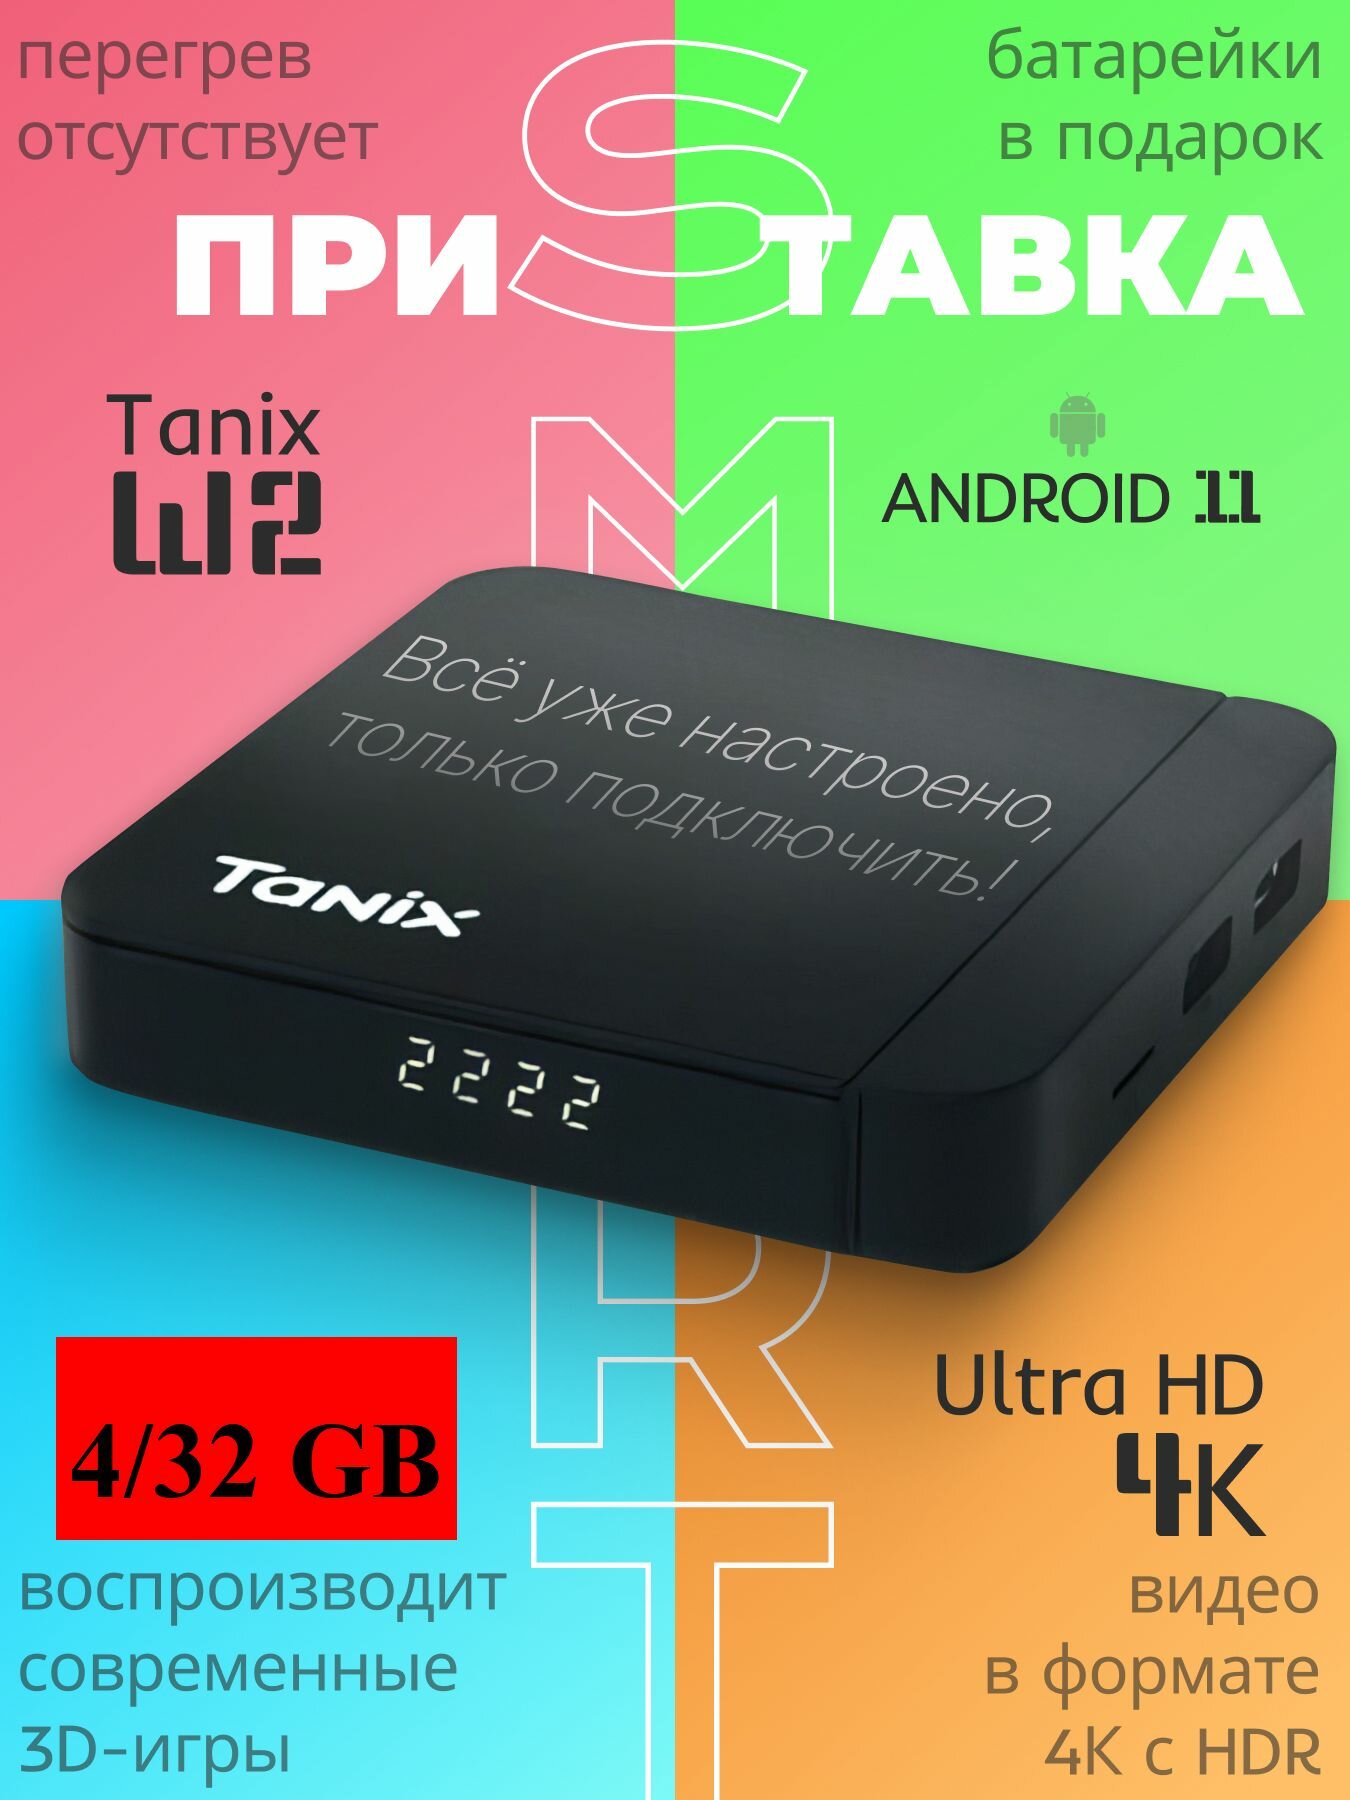 Смарт приставка Tanix W2 4/32Gb, Android TV 11, Прошивка slimBOXtv, ПДУ с голосовым управлением